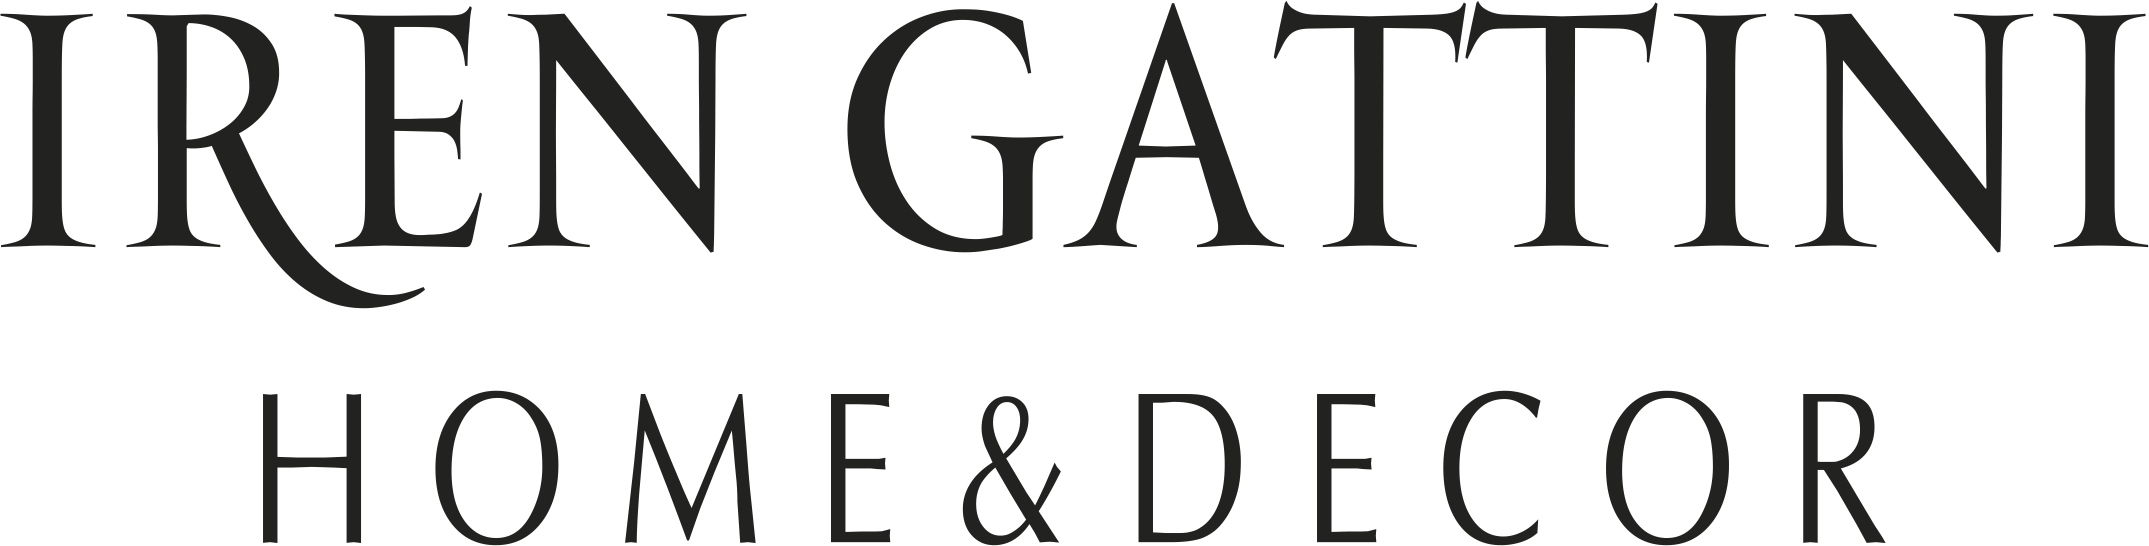 Logo Iren Gattini